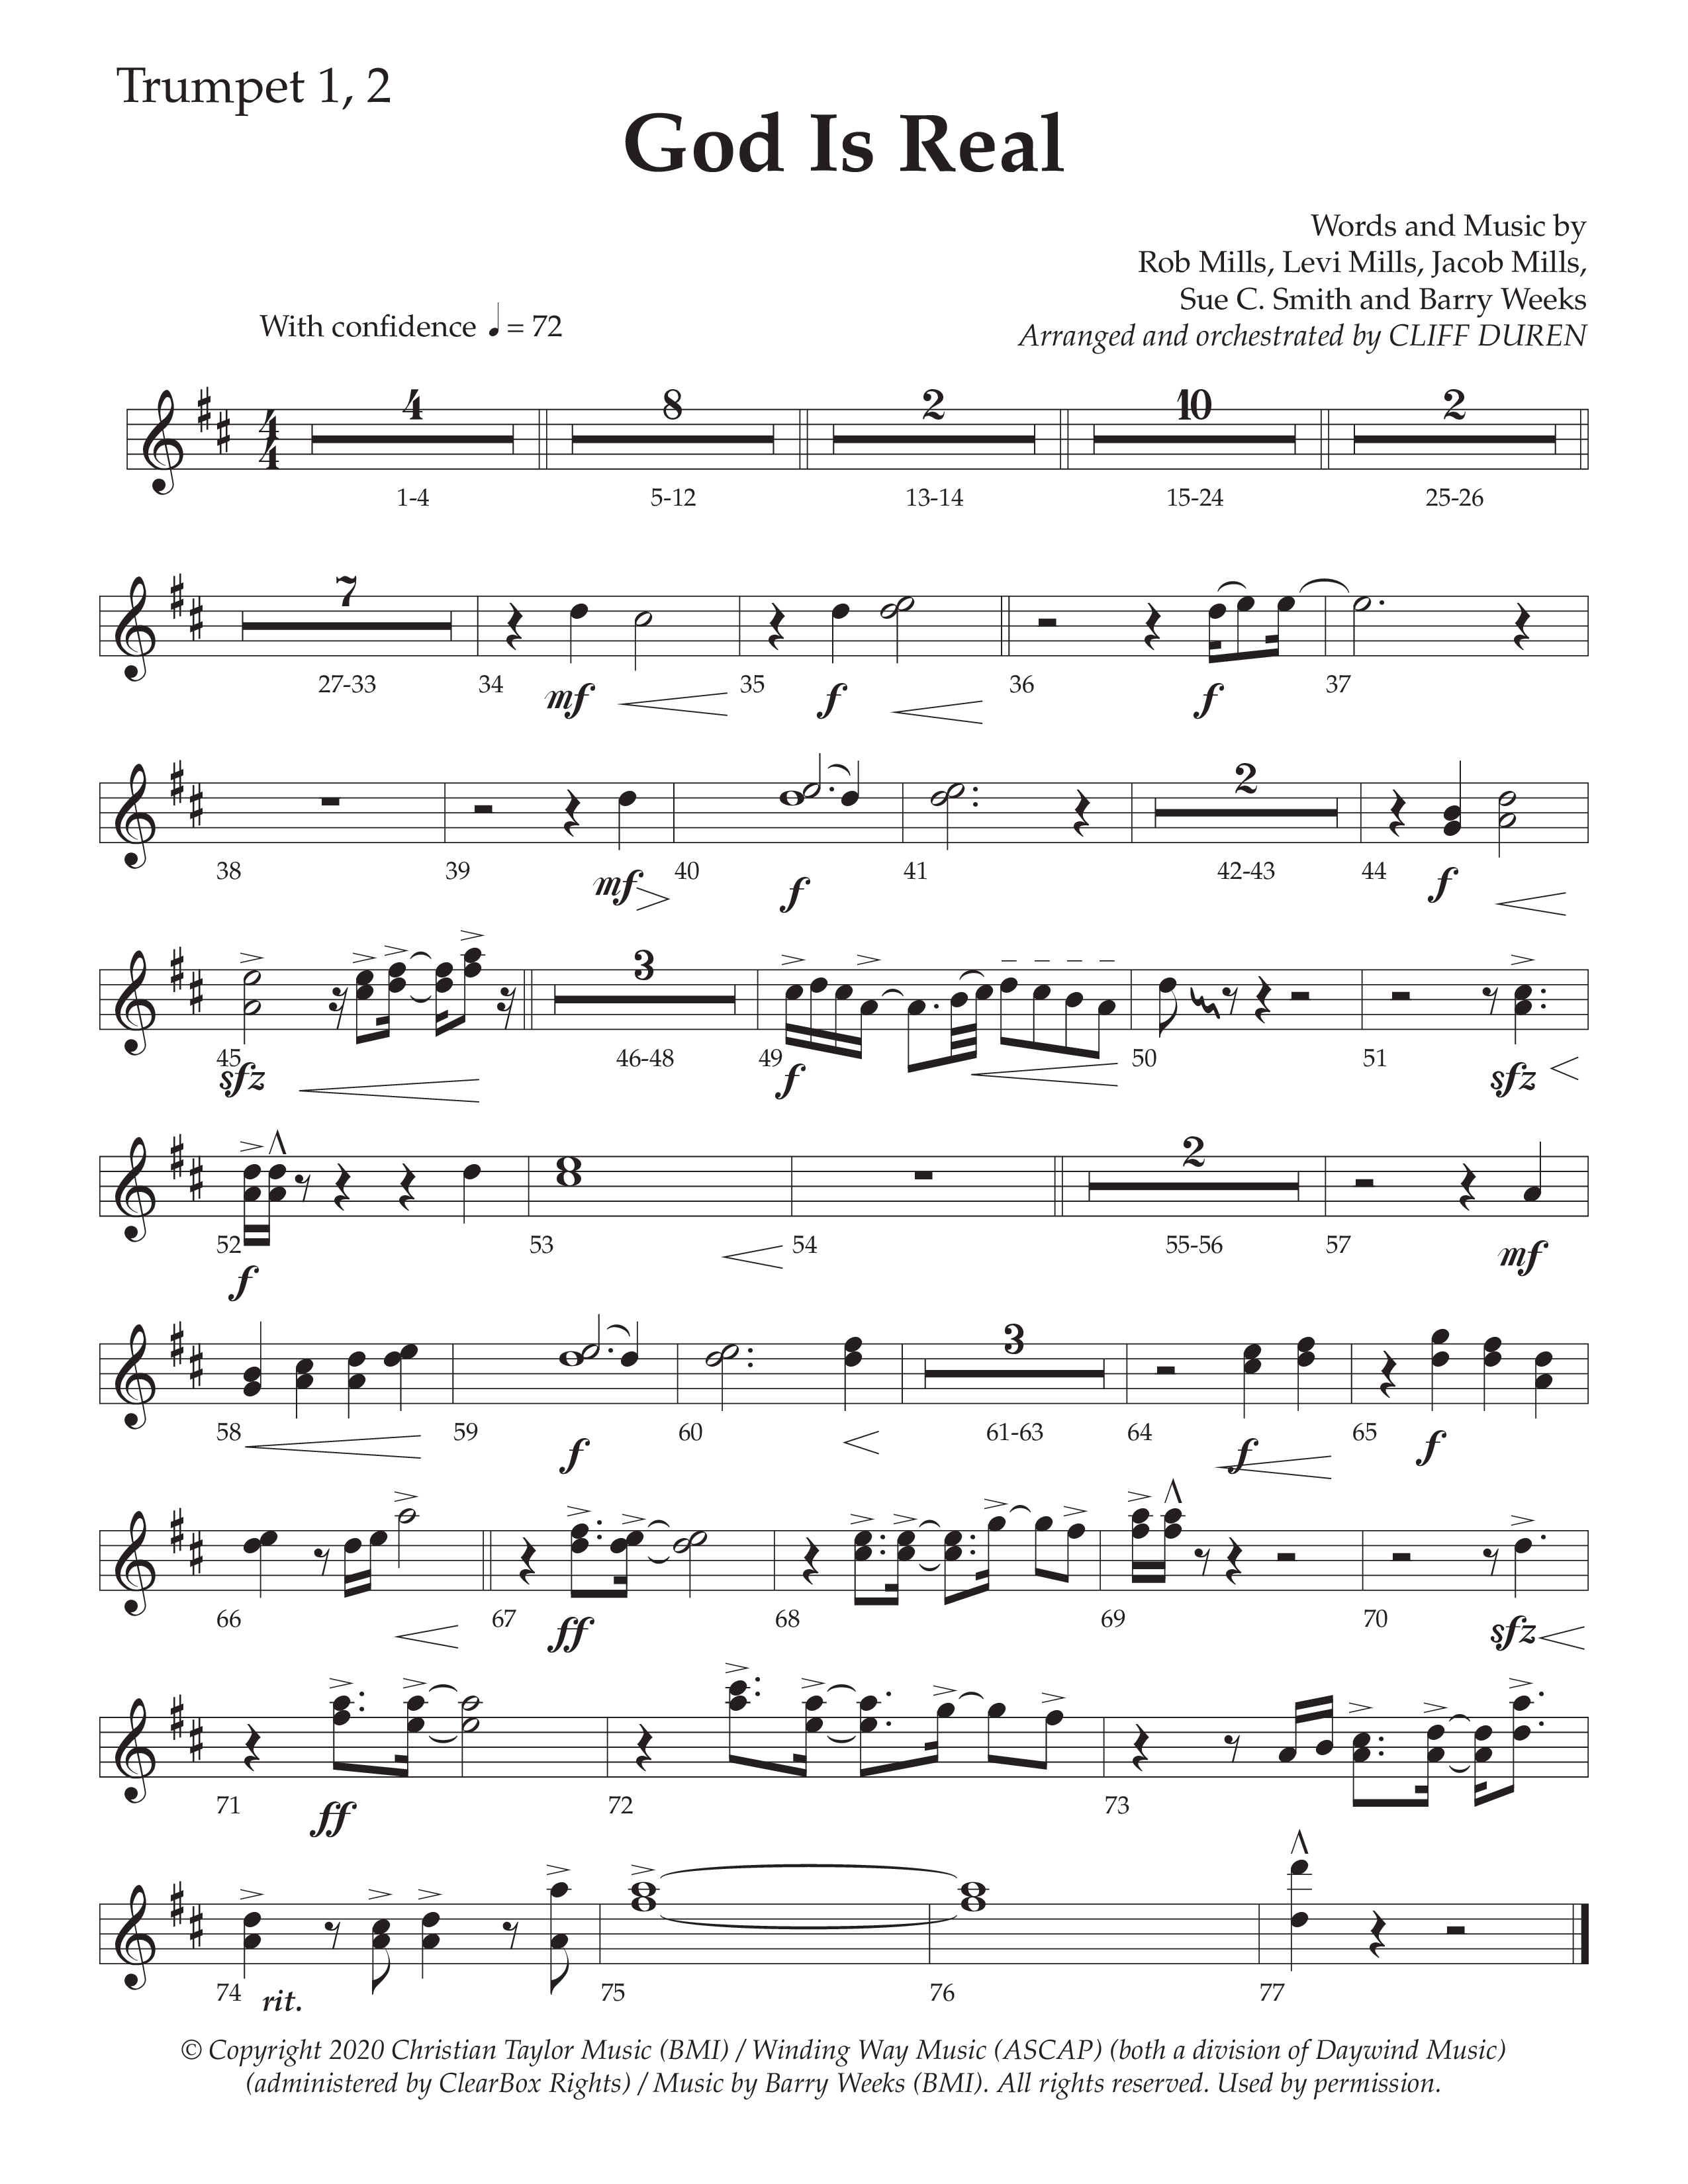 God Is Real (Choral Anthem SATB) Trumpet 1,2 (Daywind Worship / Arr. Cliff Duren)